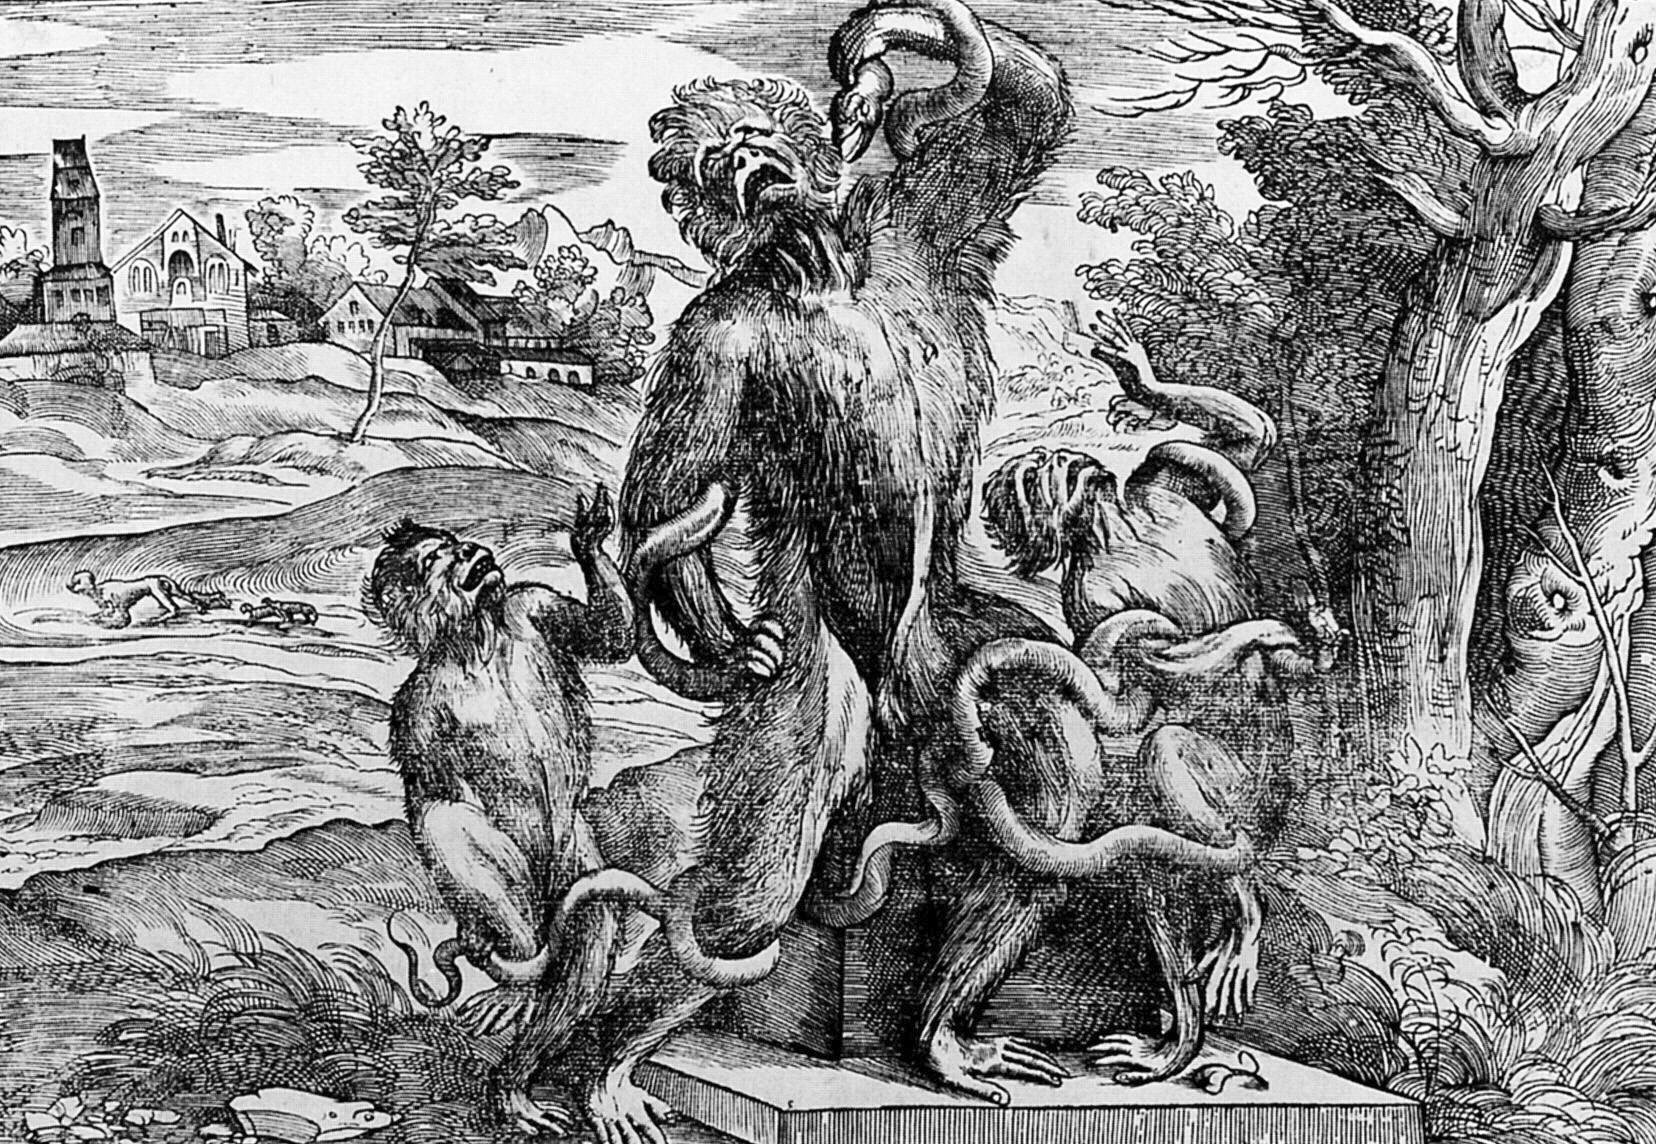 Parodia de la escultura, diseñada por Tiziano y grabada por Niccolò Boldrini, donde las figuras humanas son reemplazadas por monos